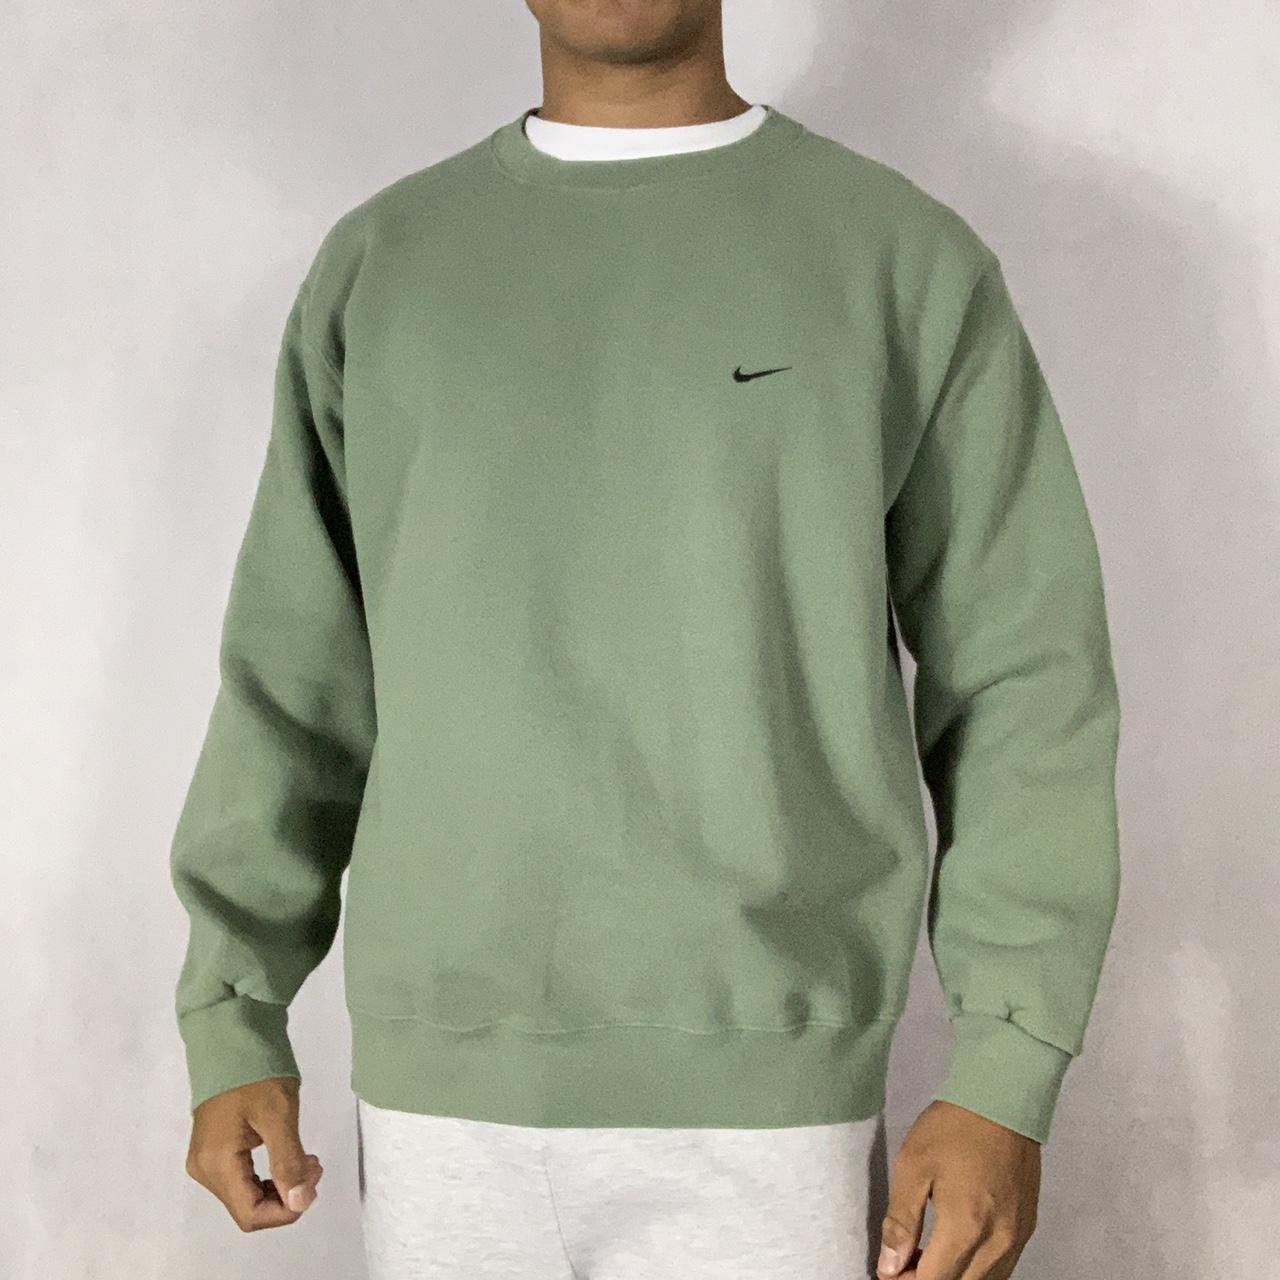 Mayor Descuido predicción Vintage Y2K Sage green Nike sweatshirt -Model is... - Depop